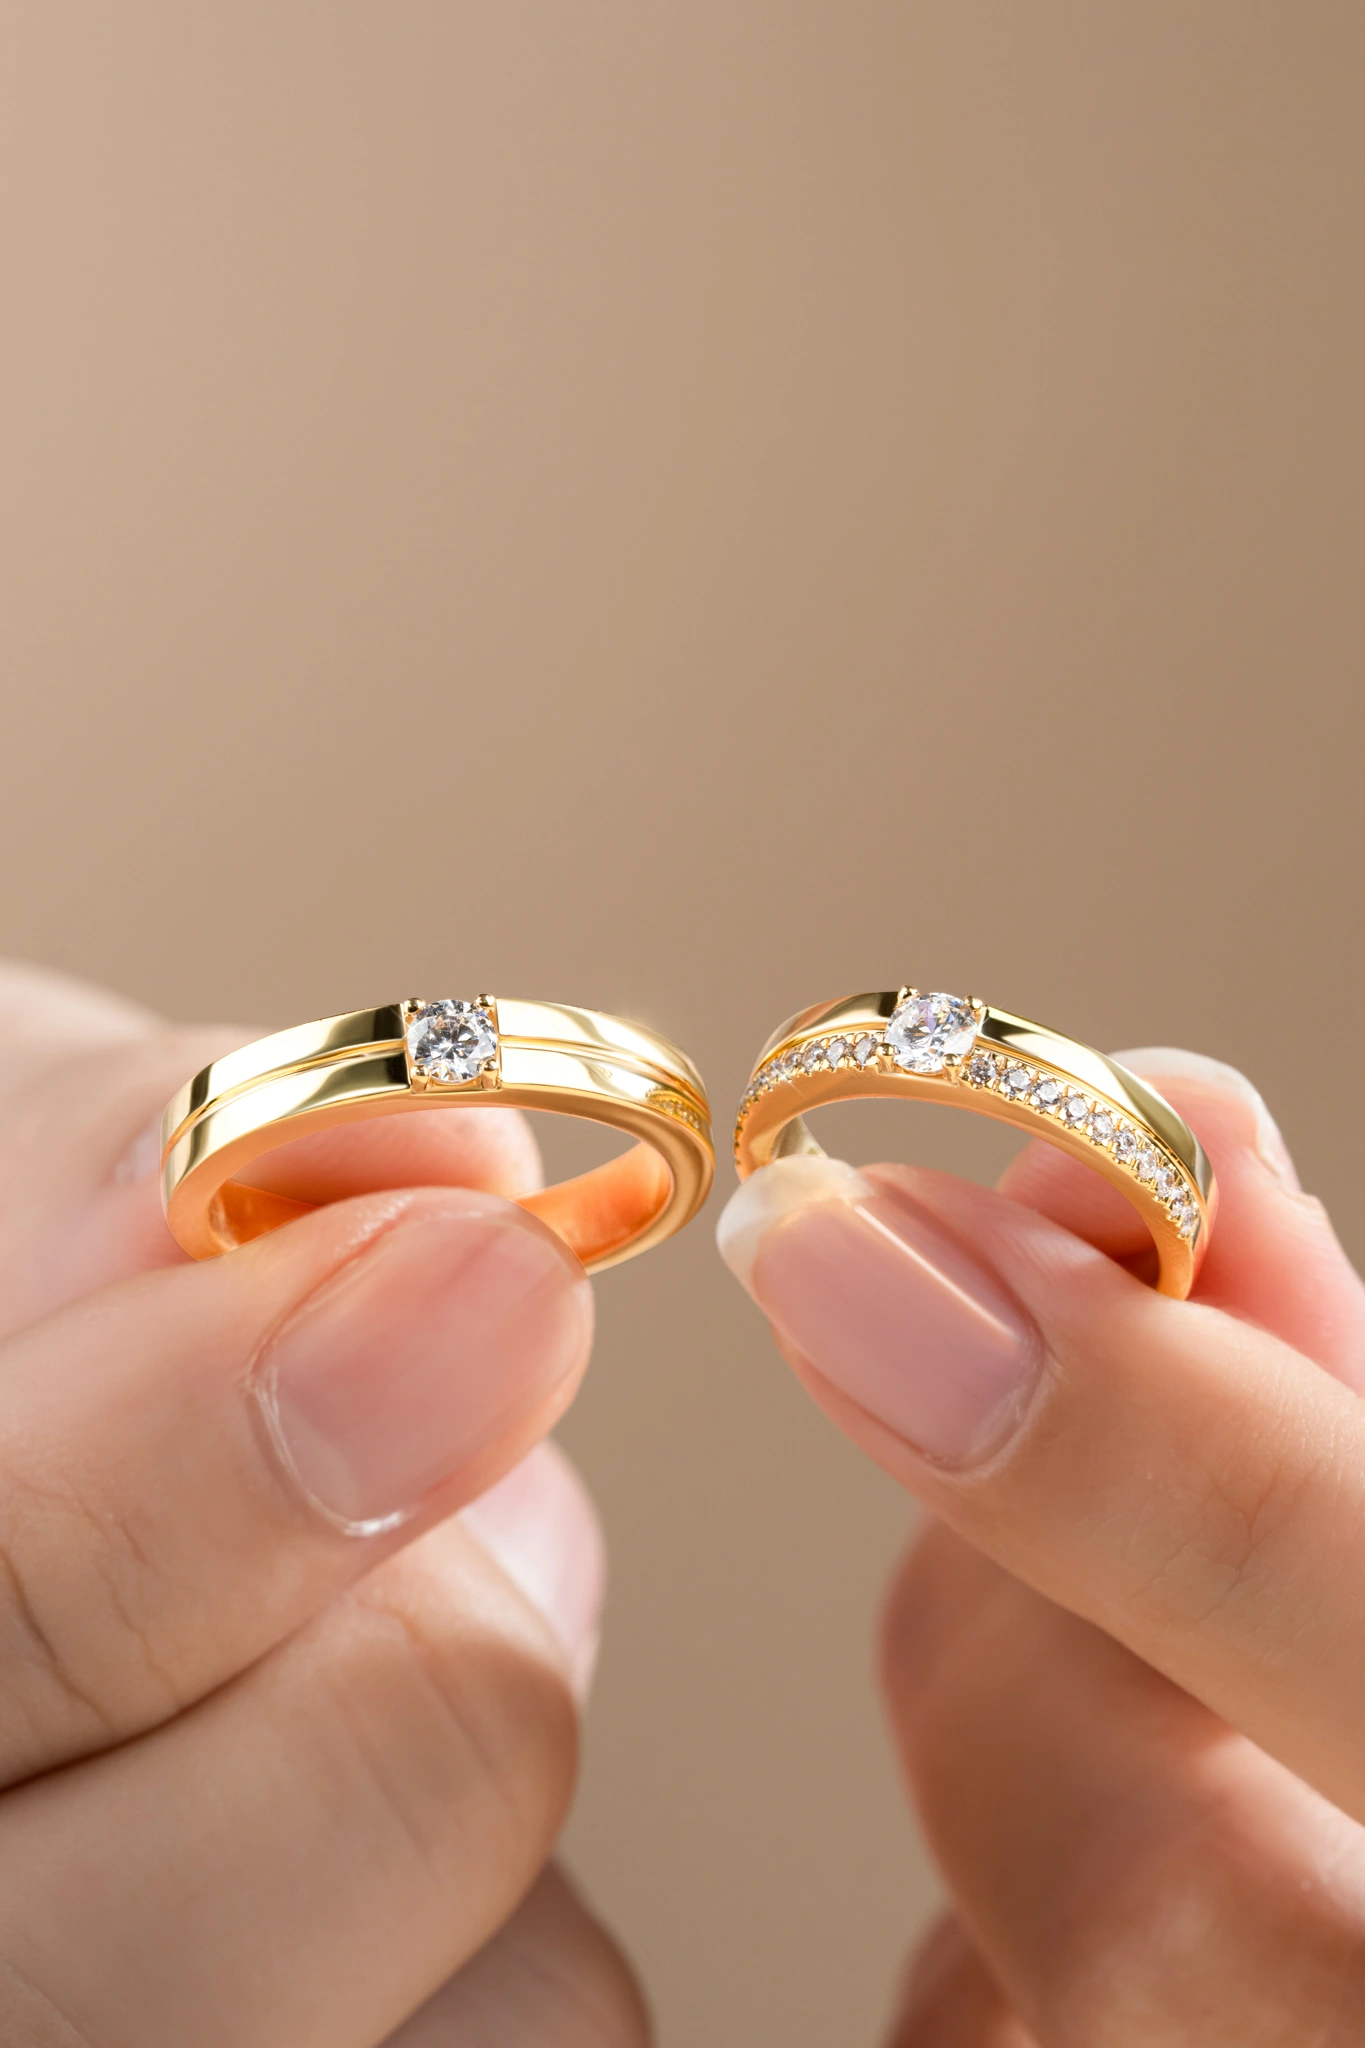 Khám phá các kiểu nhẫn cưới đẹp được săn đón nhất hiện nay